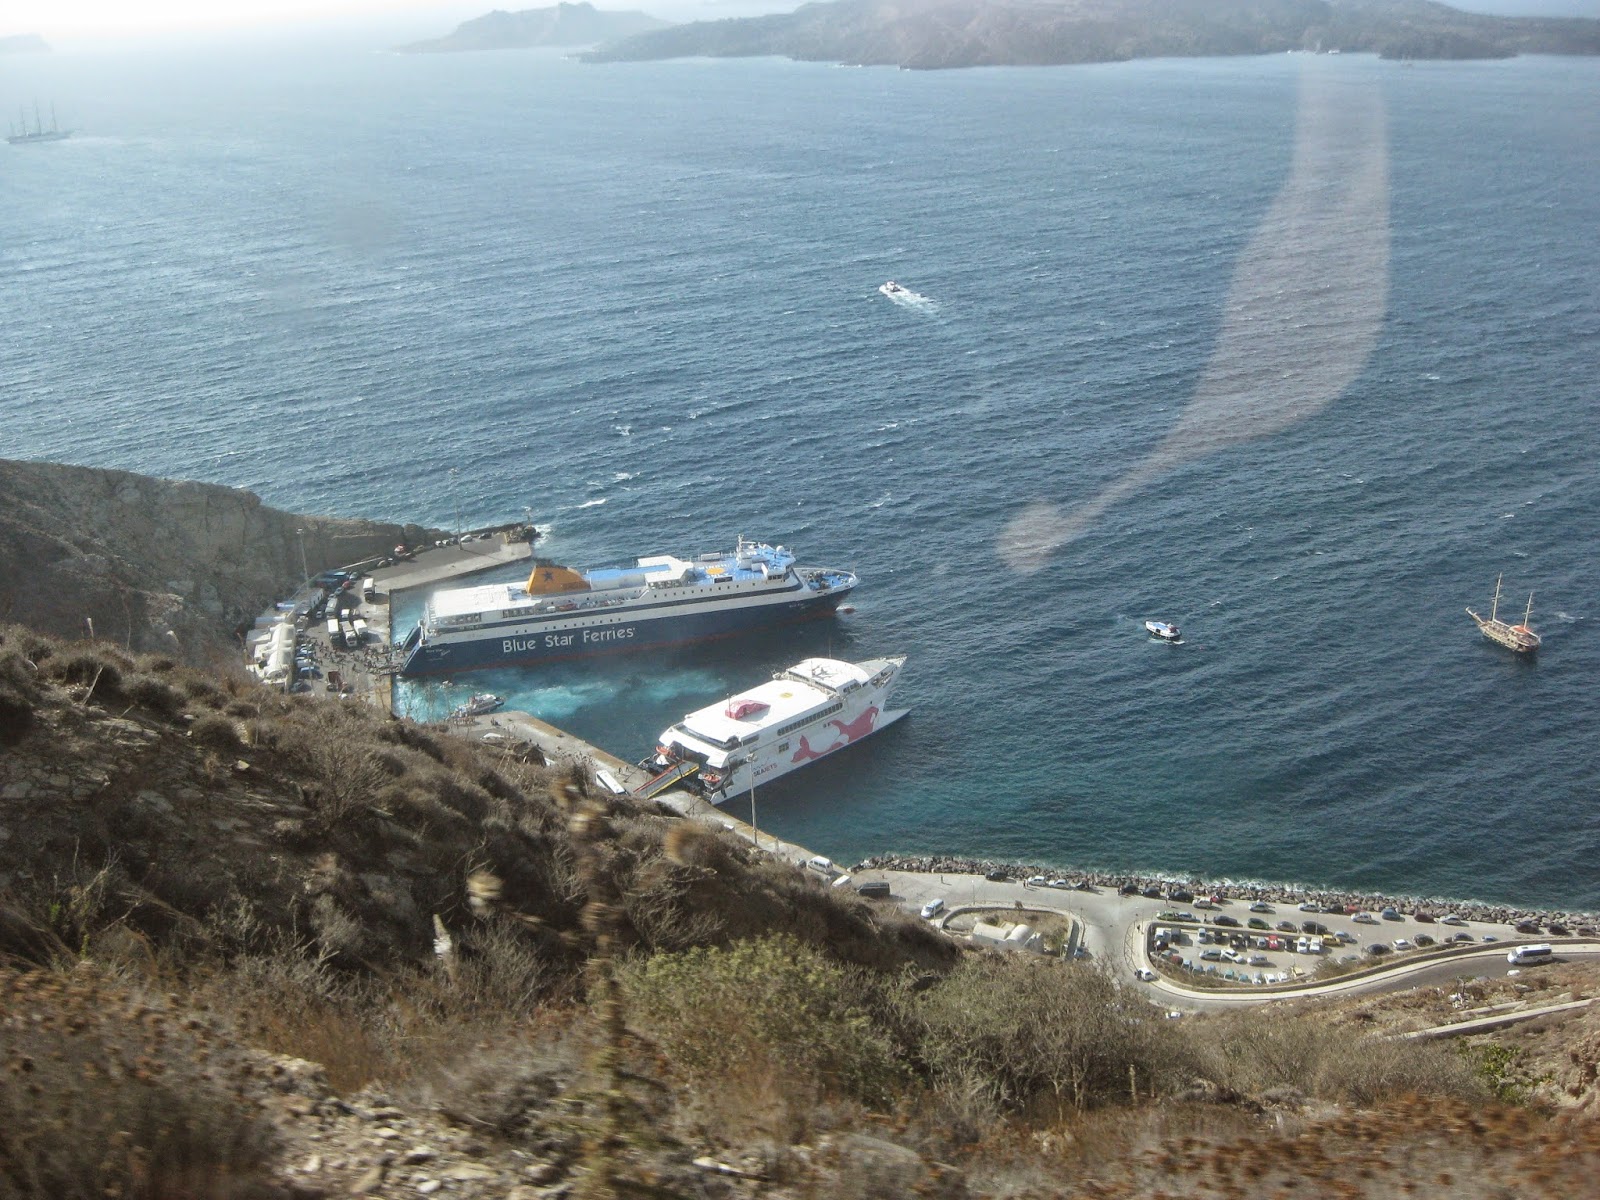 Santorini - Heading to Oia